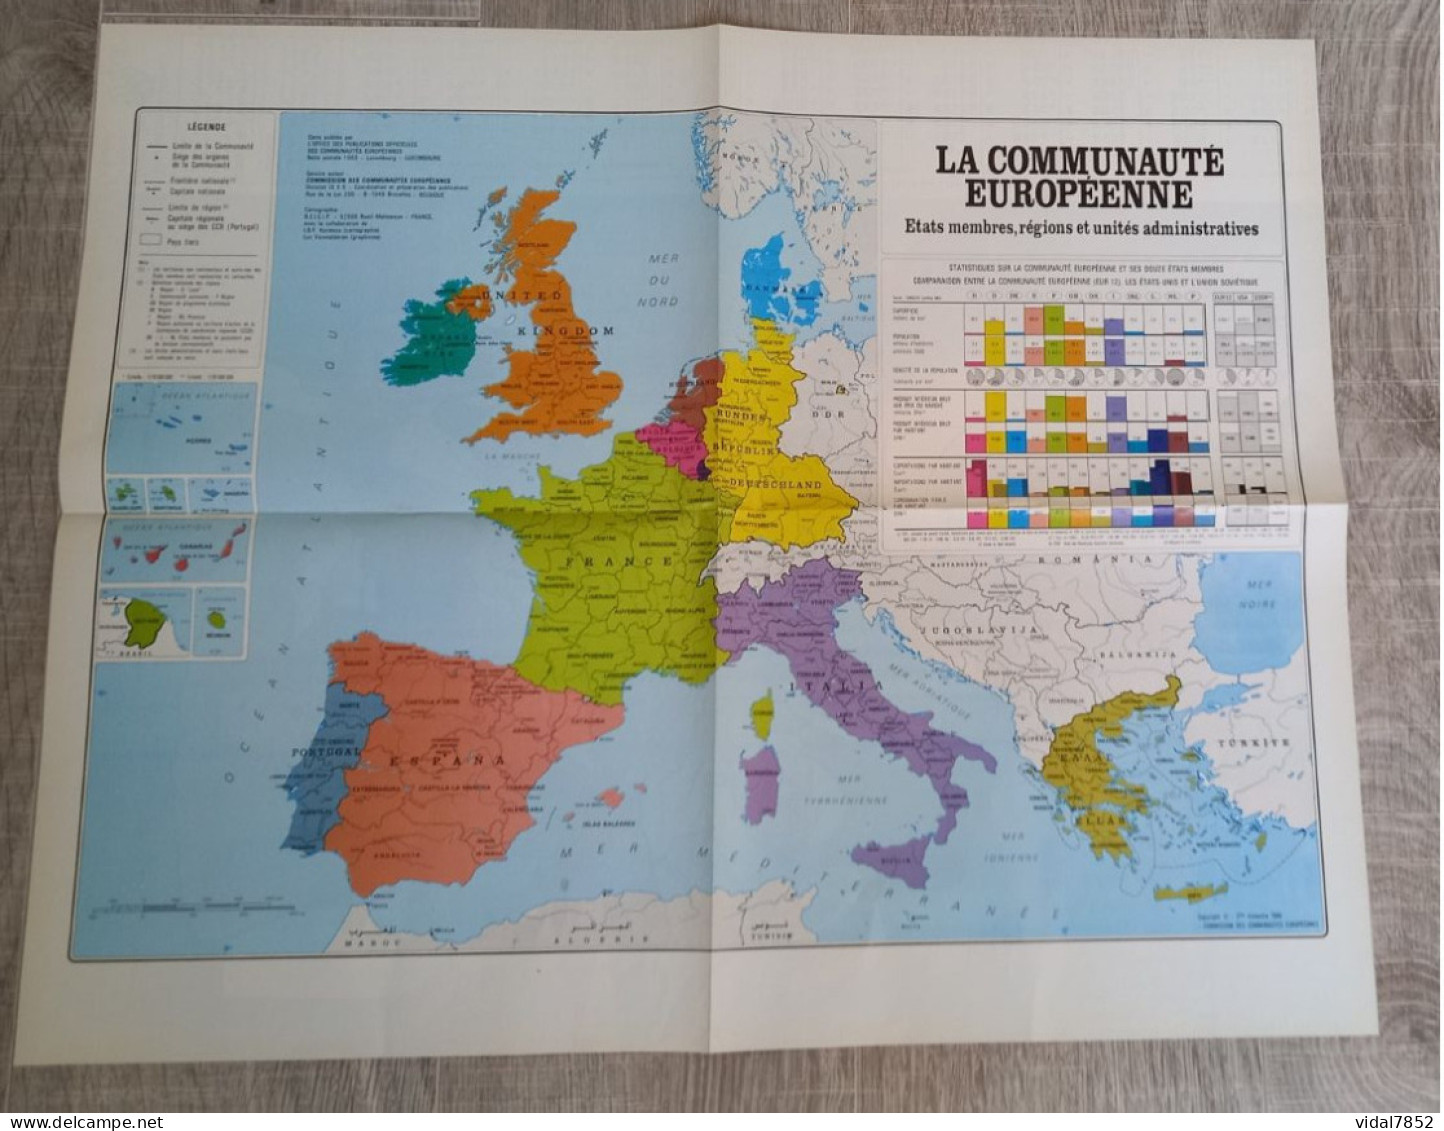 Calendrier-Almanach Des P.T.T 1991-Poster Intérieur Communauté Européenne--Tom Jerry Département AIN-01-Référence 416 - Grossformat : 1991-00